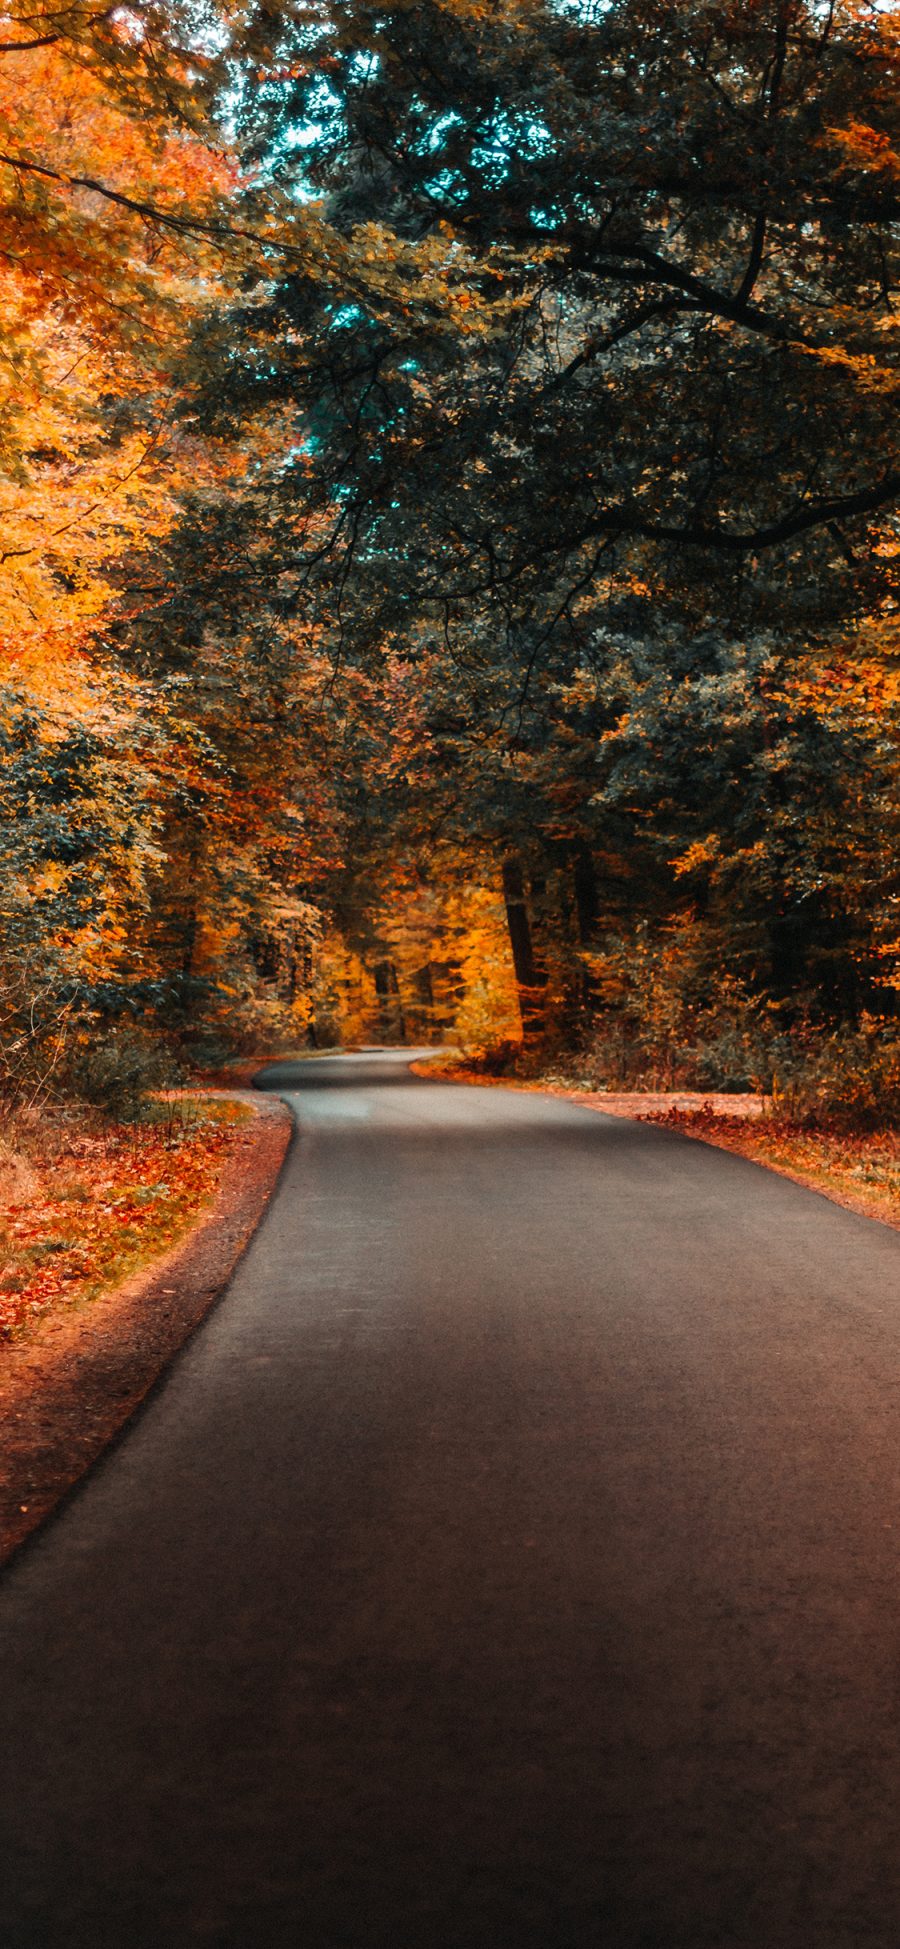 [2436×1125]道路 秋季 枯黄 公路 苹果手机壁纸图片